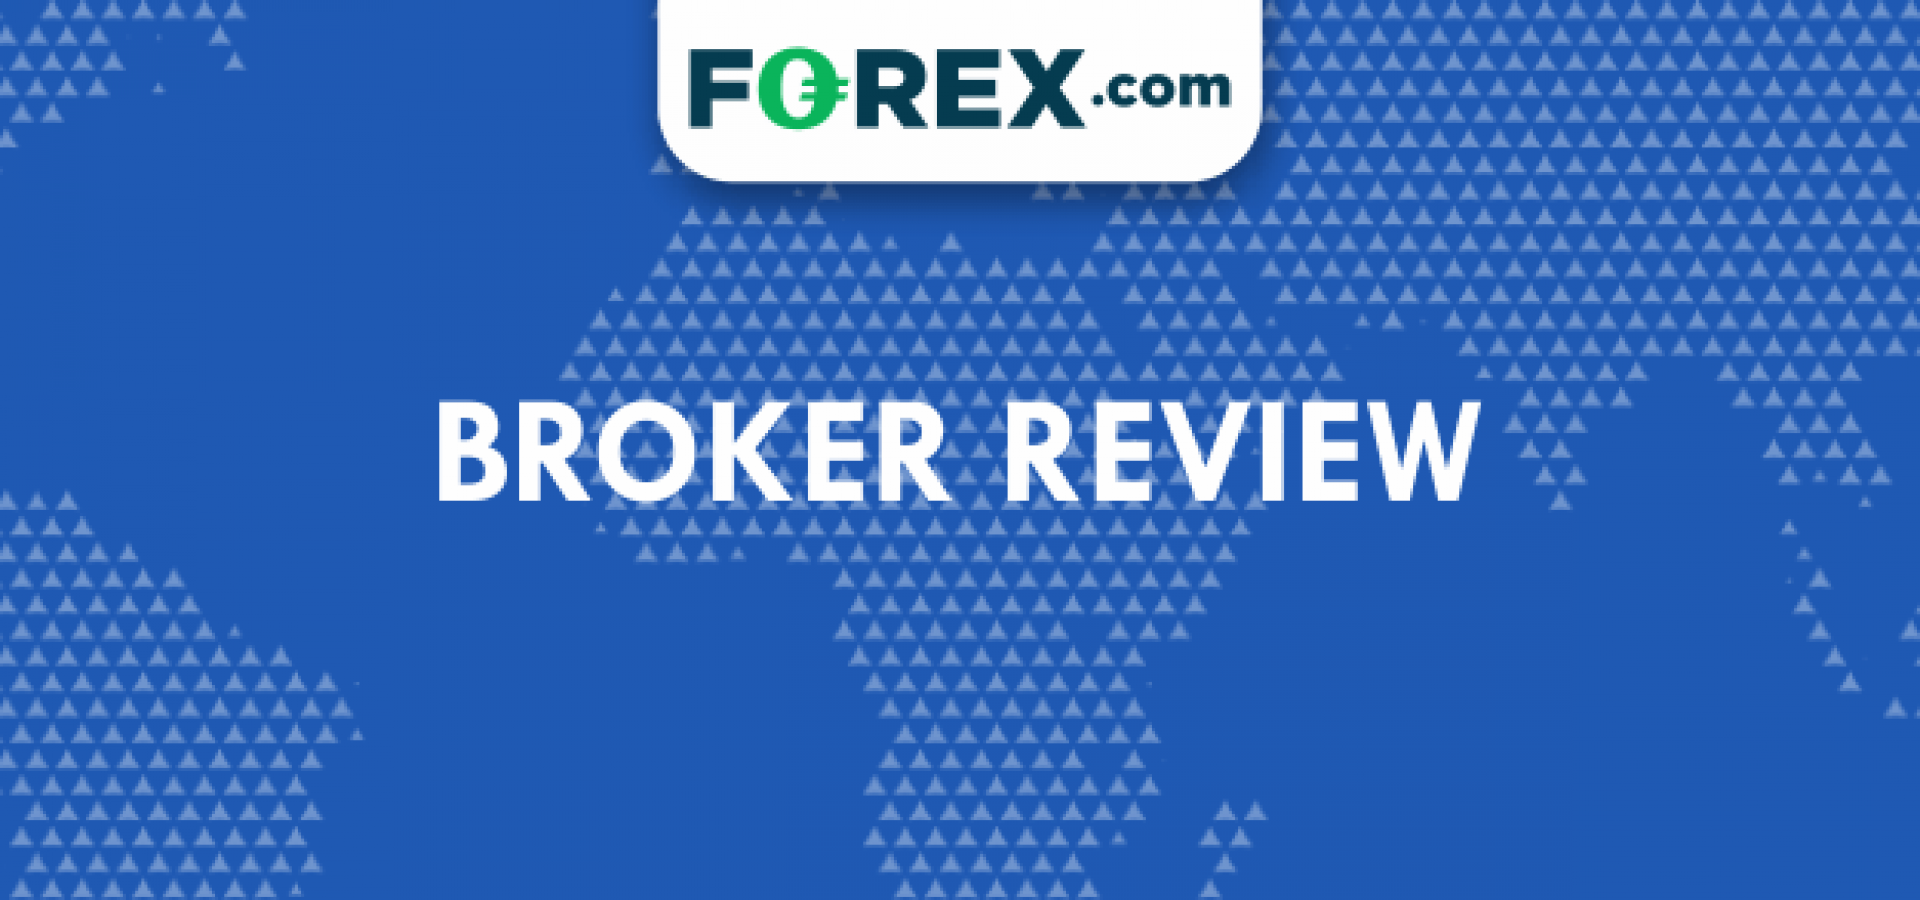 Forex.com Broker Review